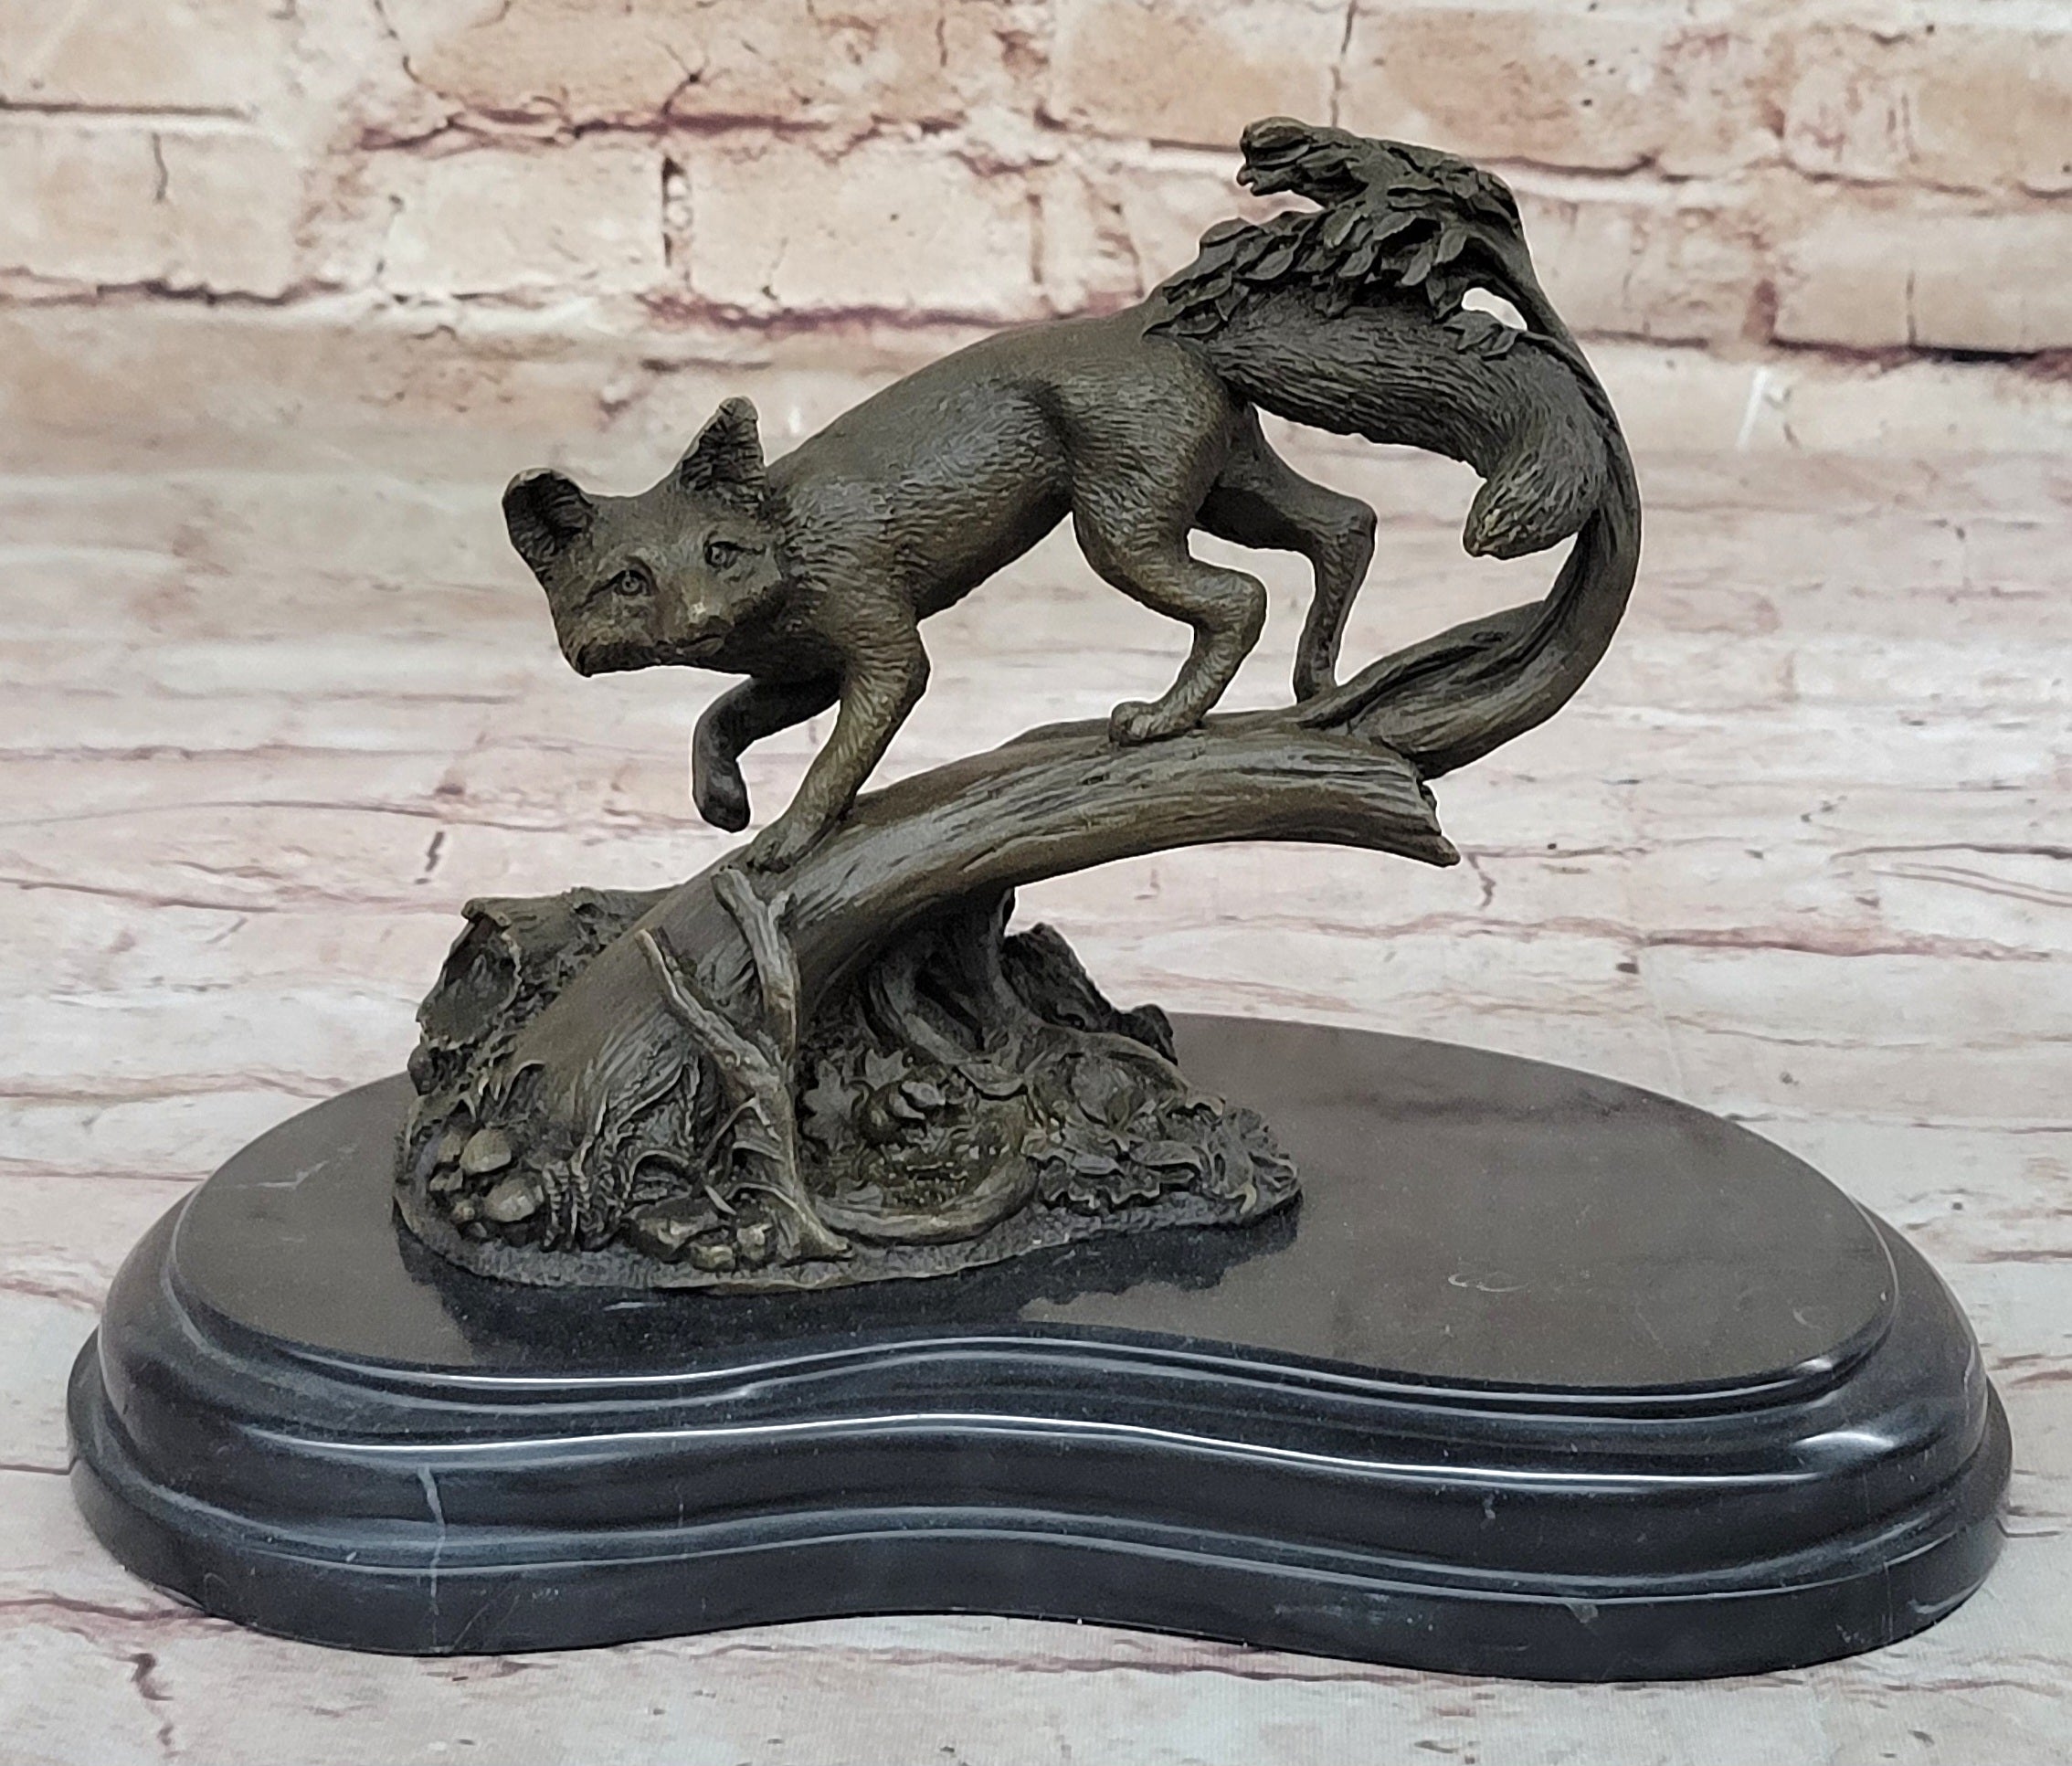 Hot Cast Fox Animal Smart Bronze Sculpture Figurine Museum Quality Figurine Sale